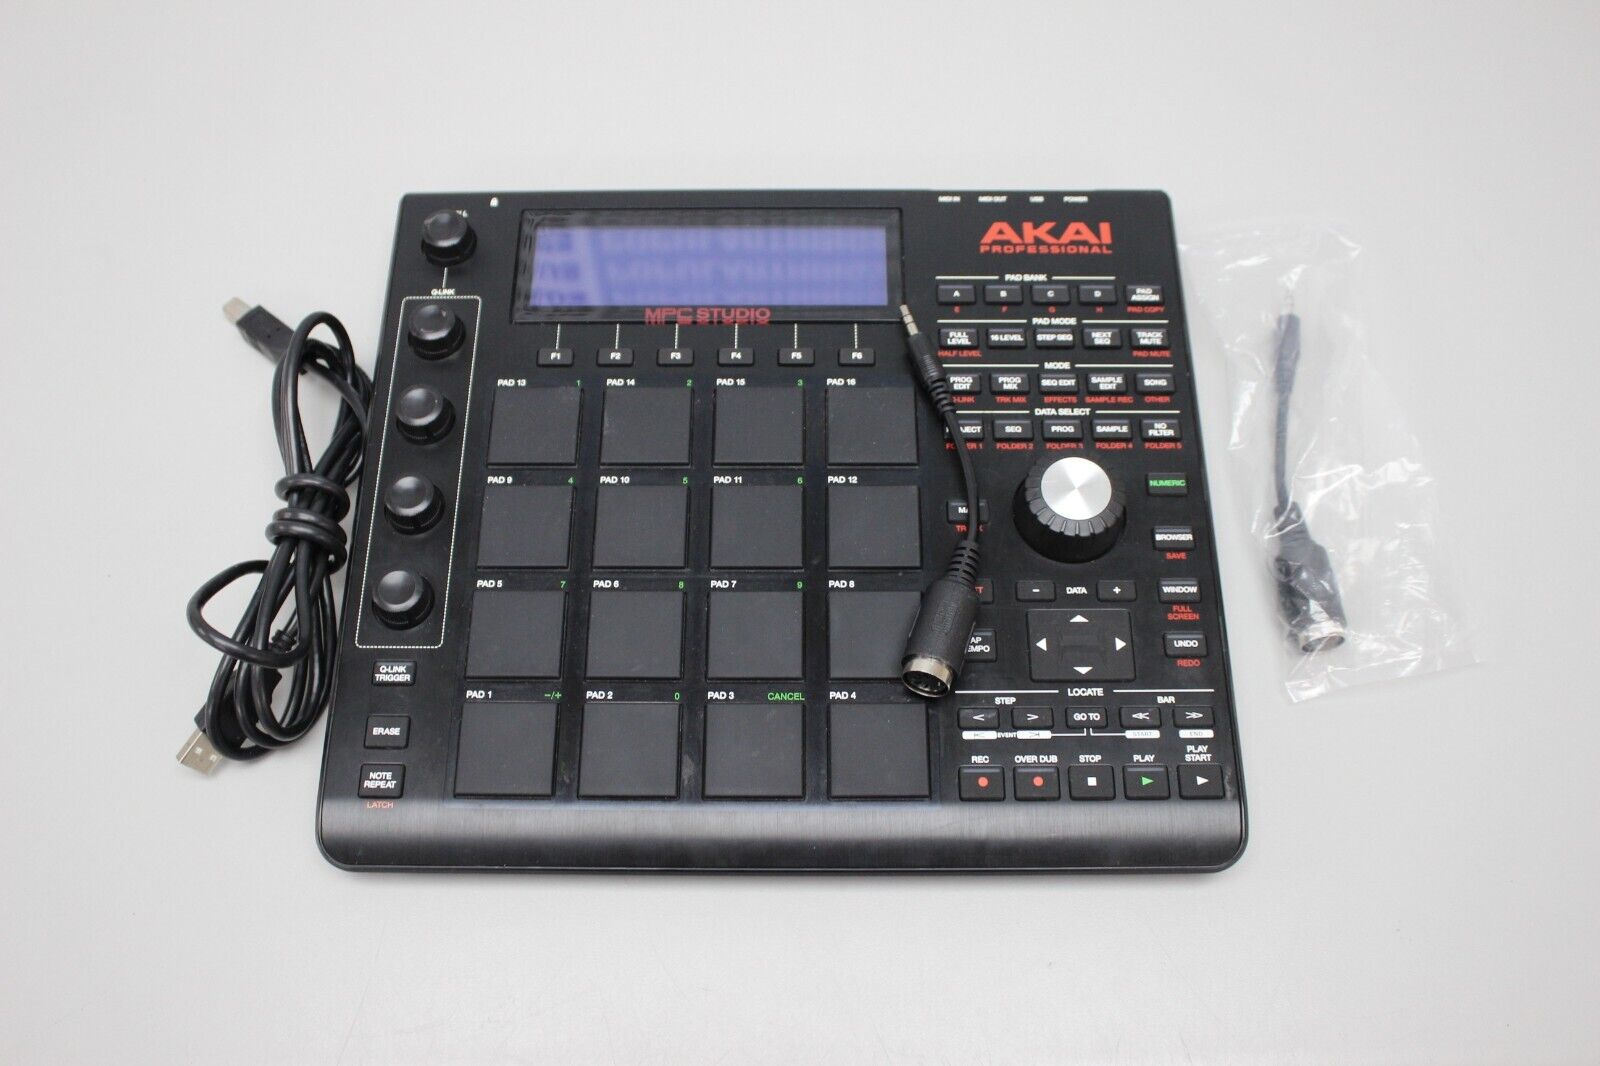 Akai Professional MPC Studio MIDI Interface - Black for sale